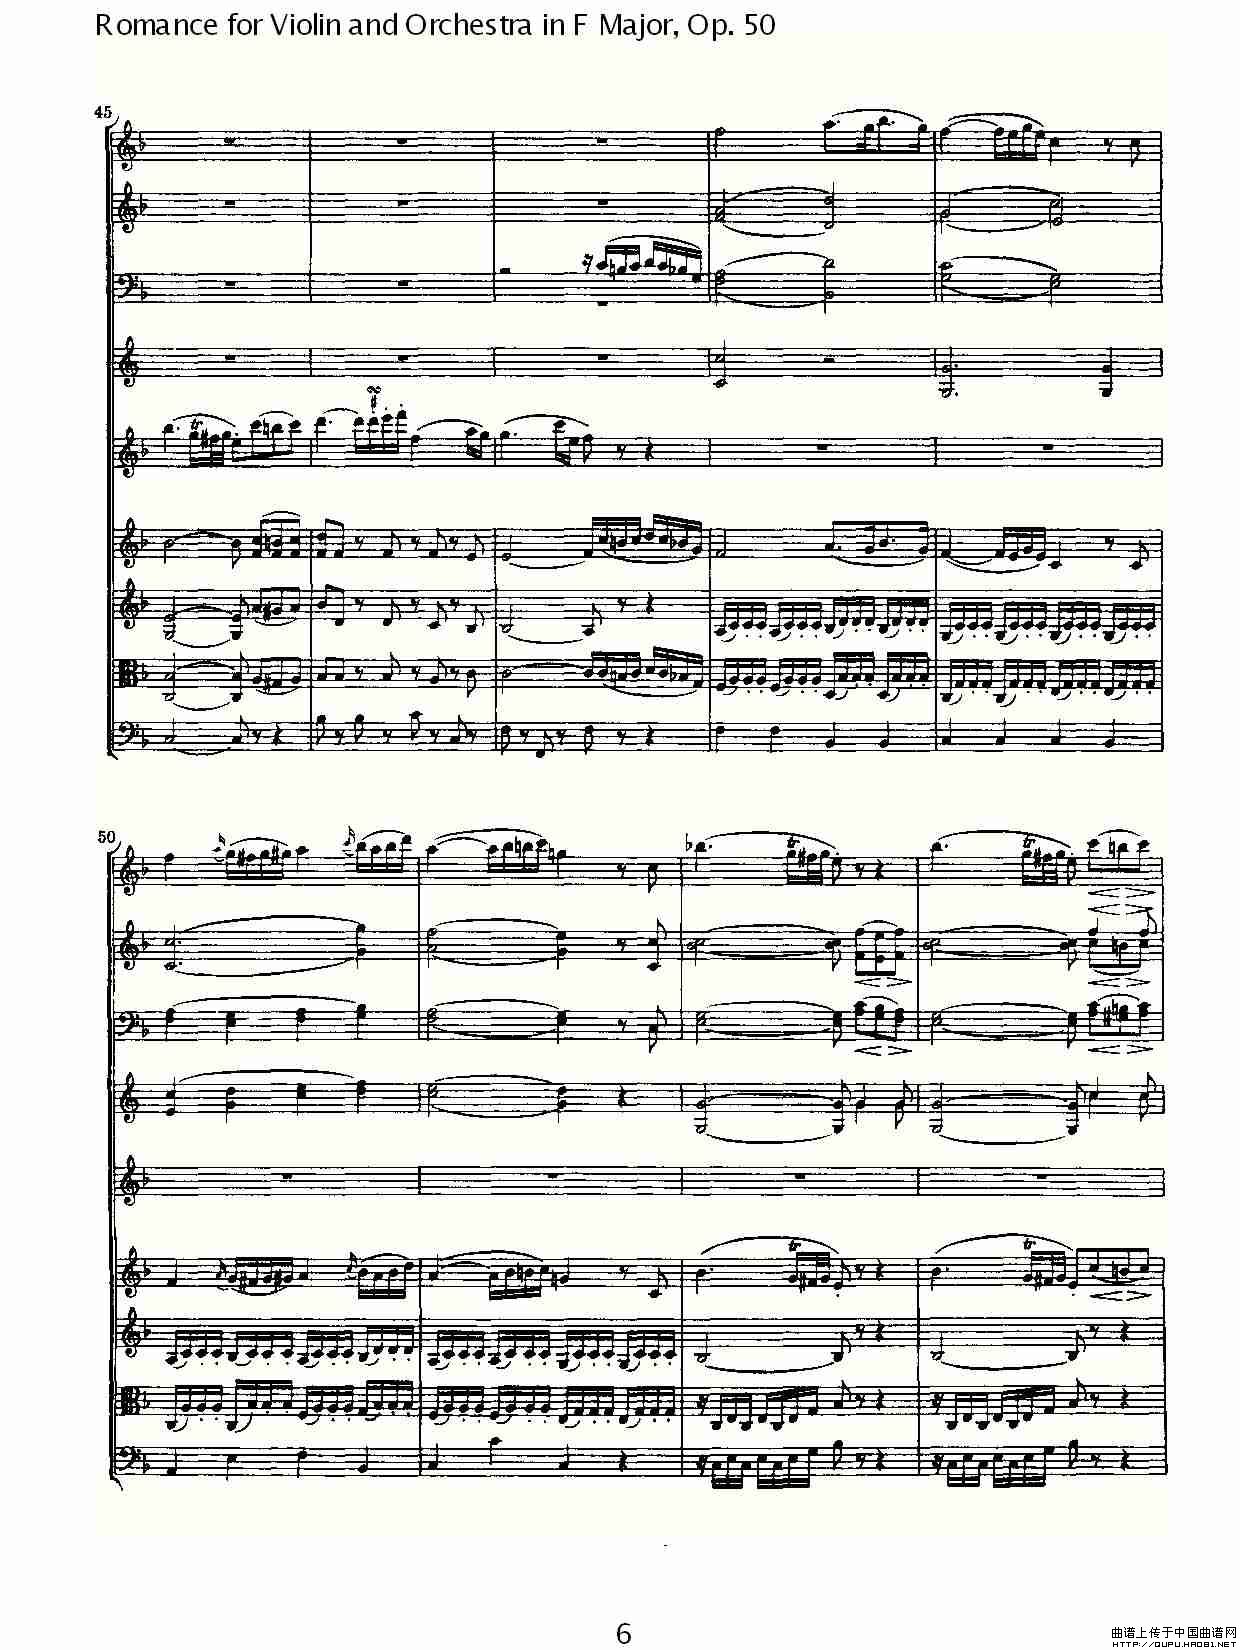 小提琴与管弦乐奏F大调浪漫曲 Op.50小提琴谱